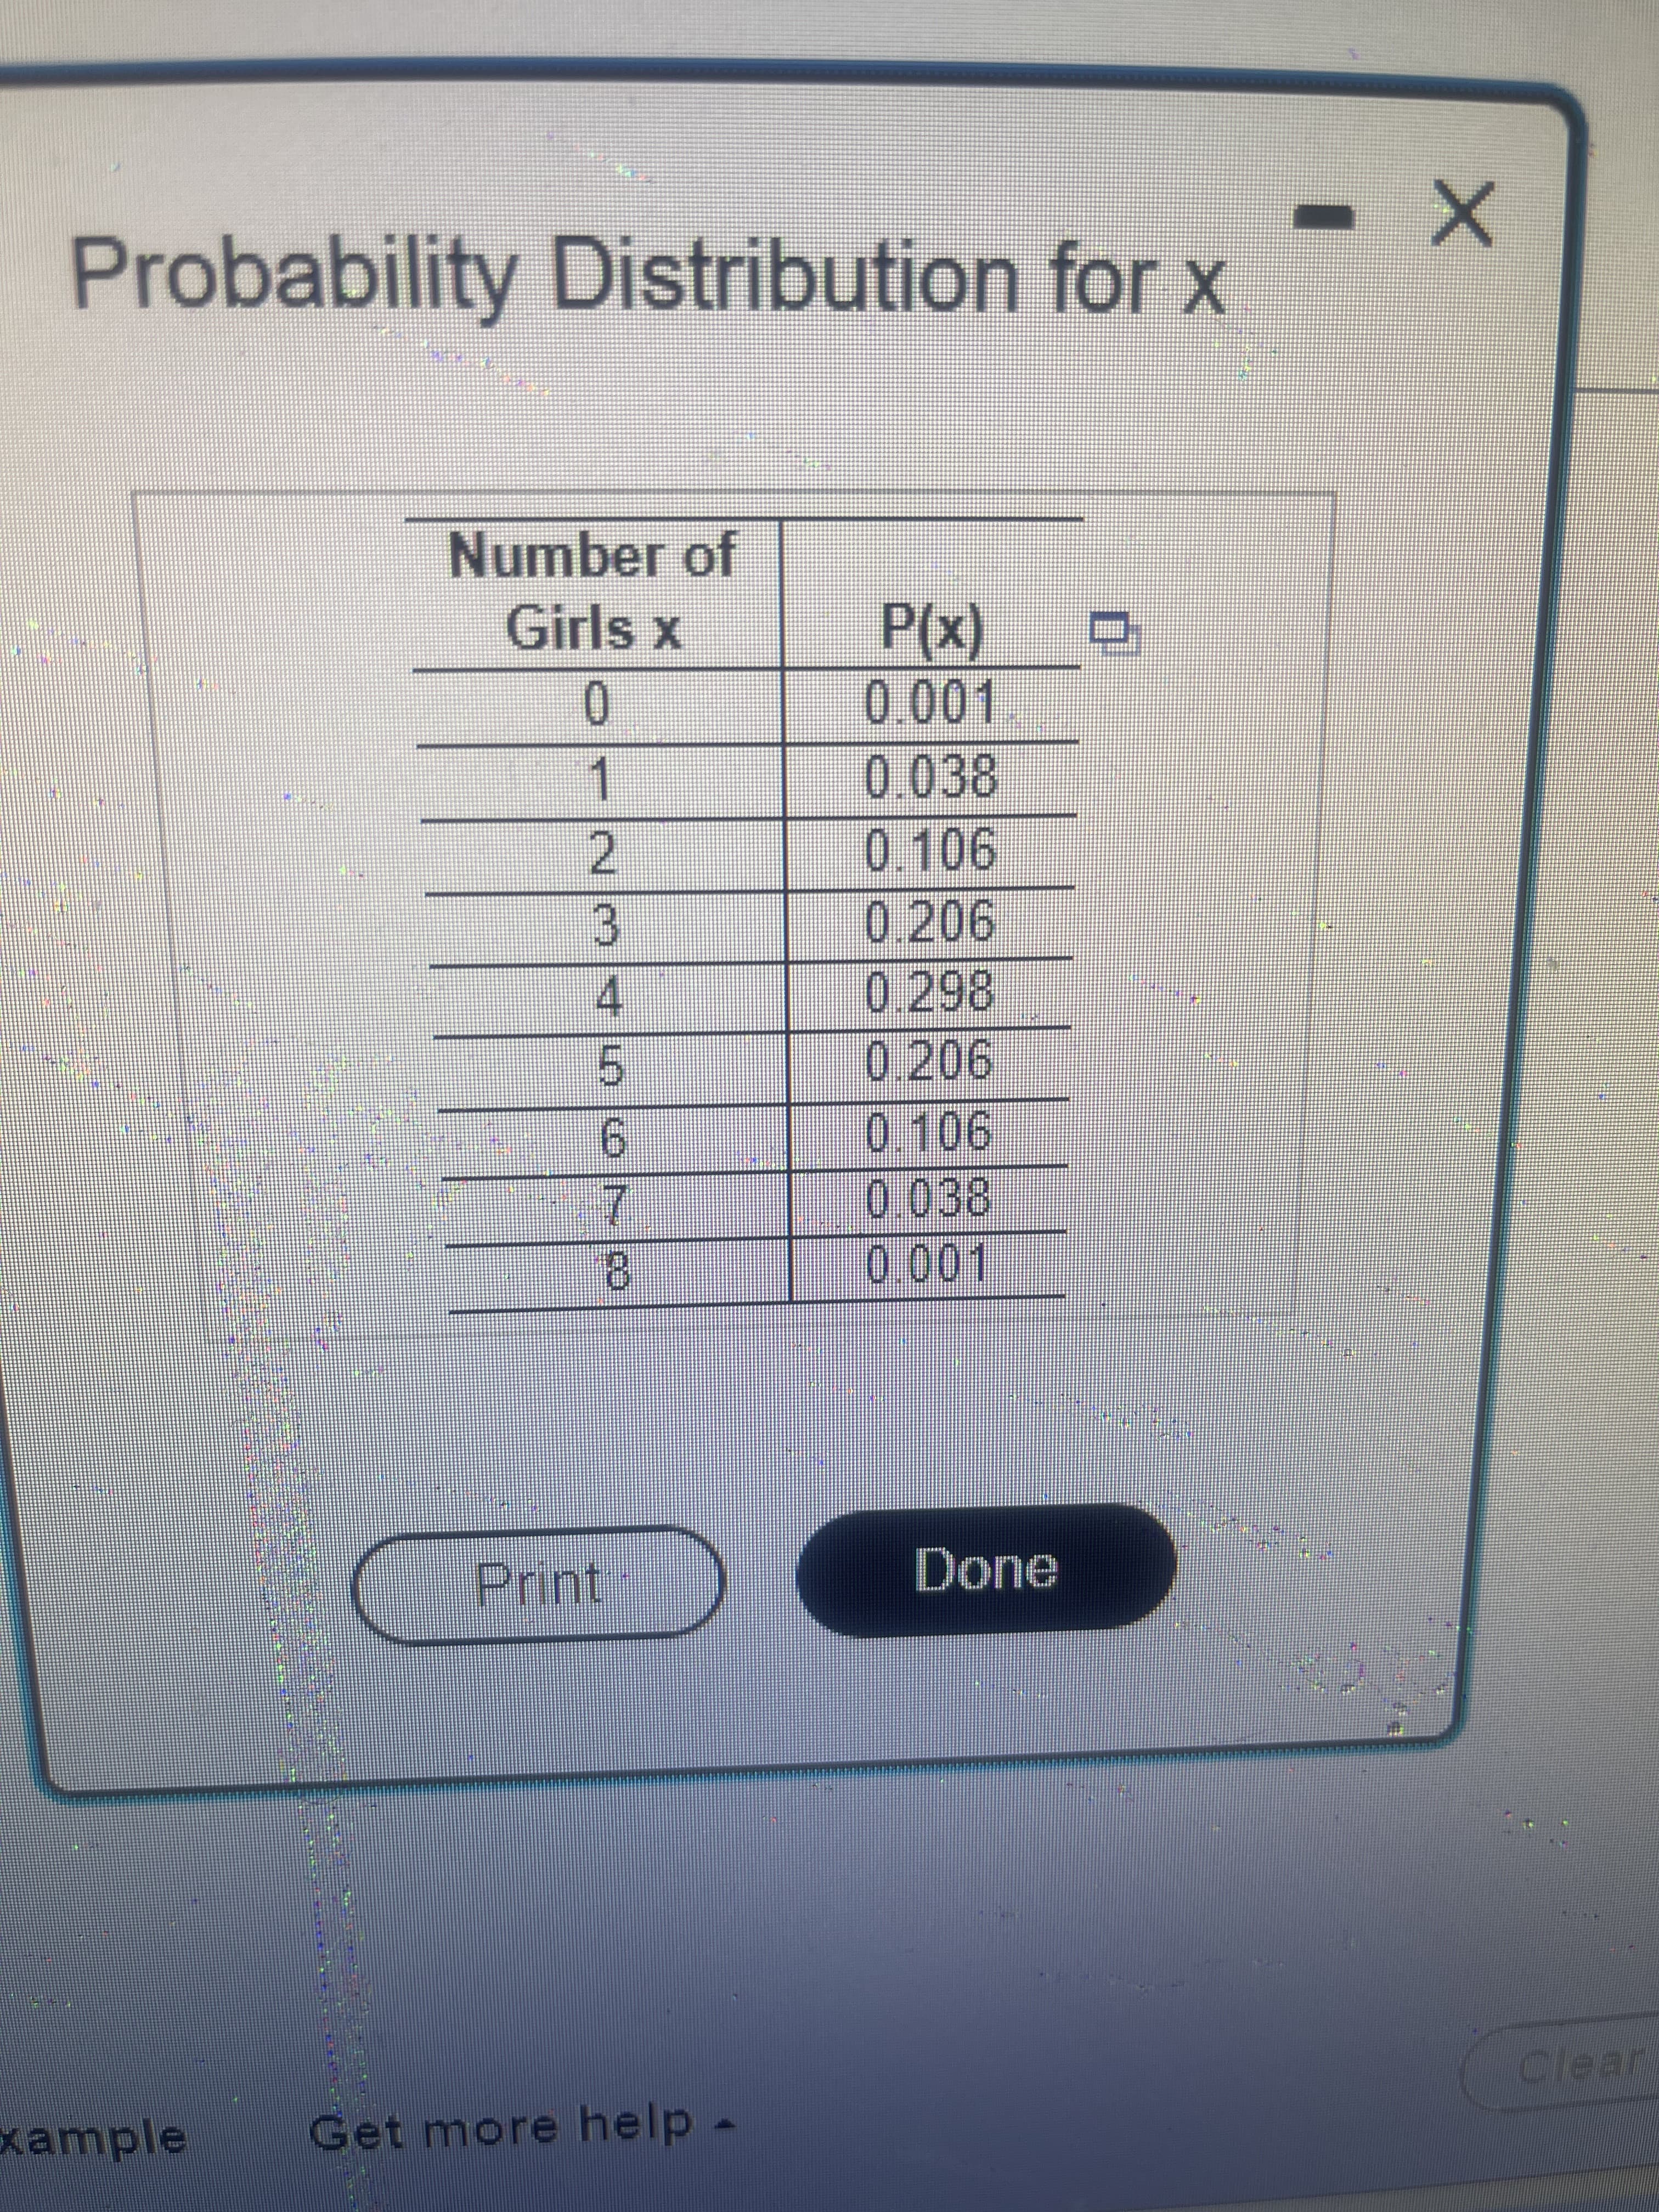 ロ
Probability Distribution for x
Number of
Girls x
(x)
01
0.038
0
1.
0.206
0.298
3.
4.
0.206
0.106
6.
7.
8.
0.038
Print
Done
Clear
Example
Get more help
